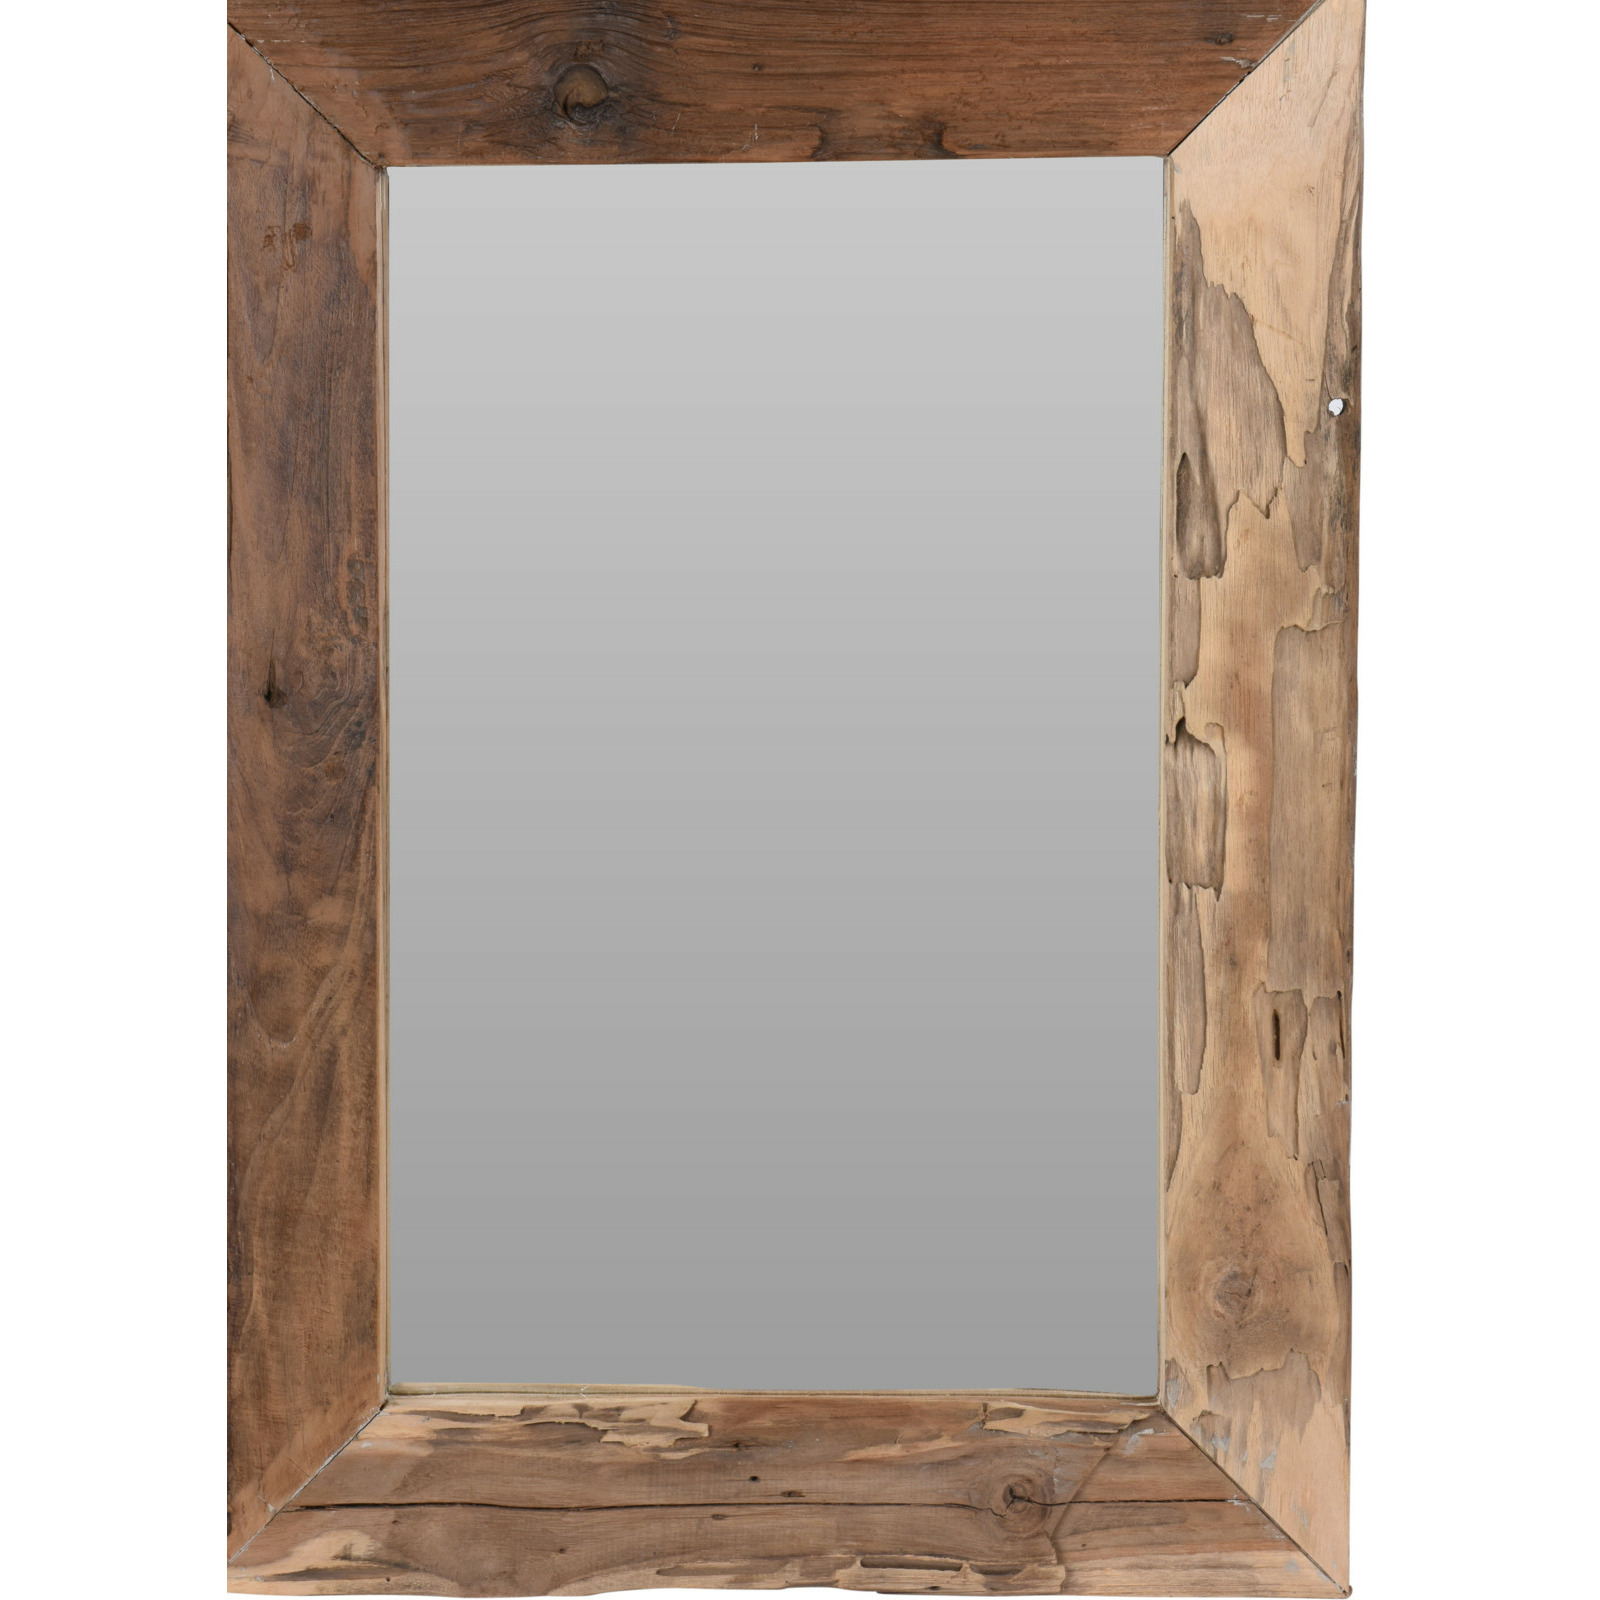 Spiegel-wandspiegel teak hout bruin rechthoek 70 x 50 cm